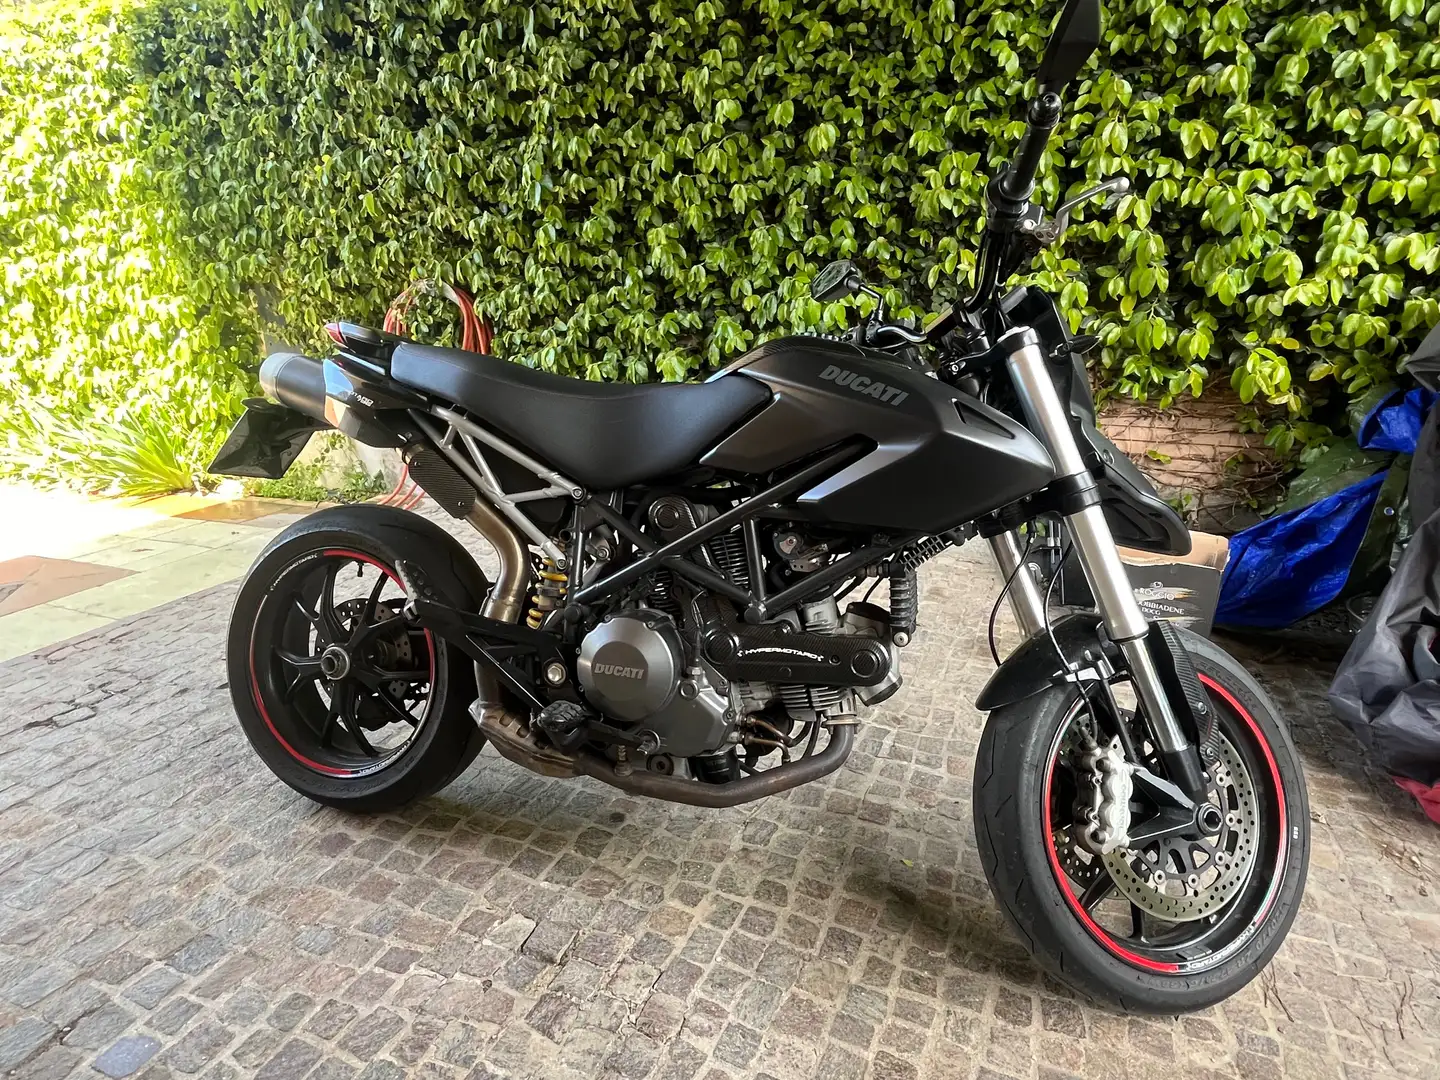 Ducati Hypermotard 796 Nero - 2